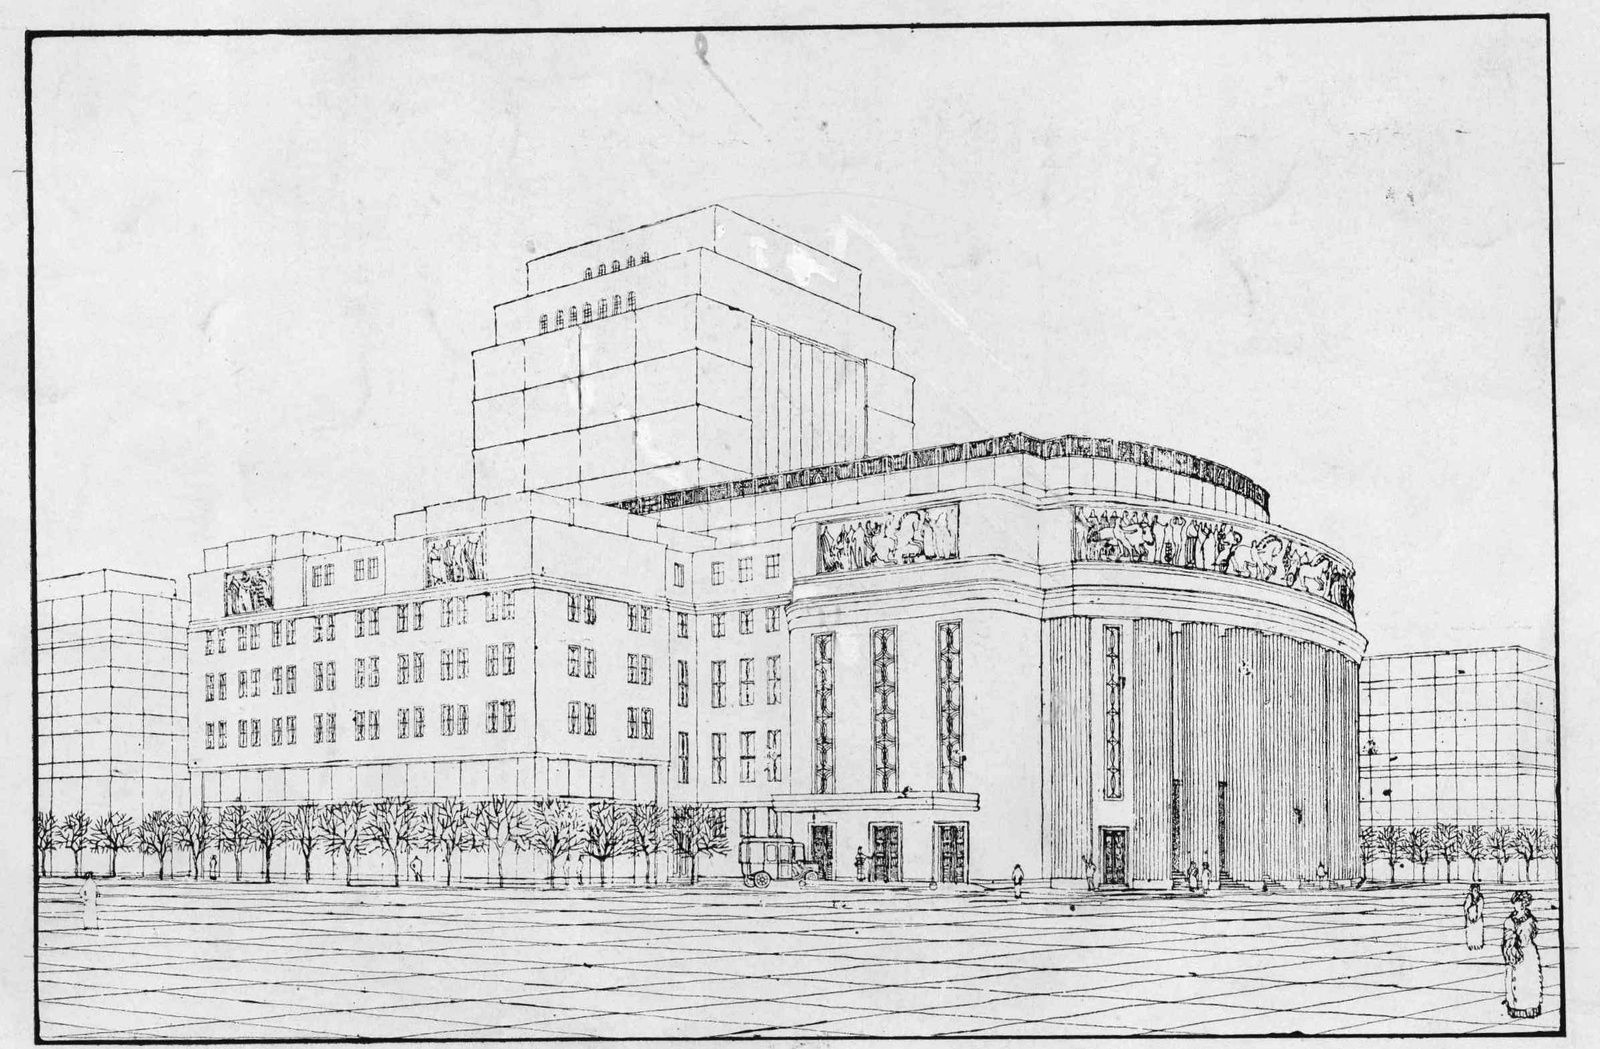 NemzetiSzinhaz-Astoria-Palyazat-1912-ToryEmil-PoganyMoric